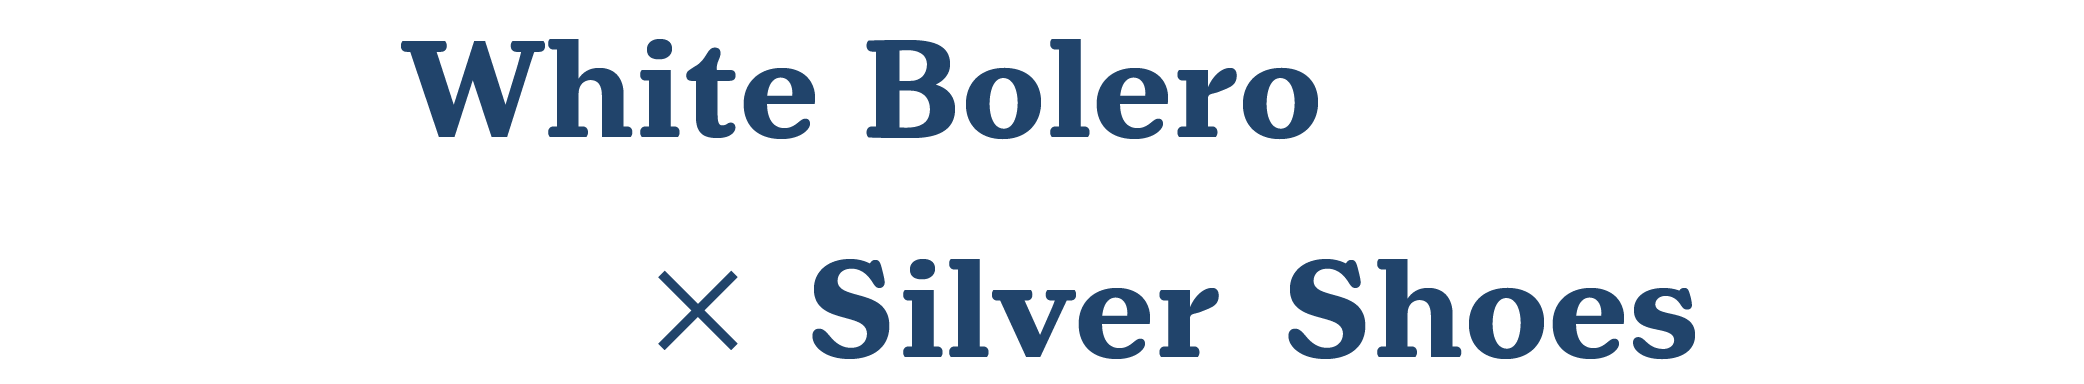 White Bolero×Silver Shoes